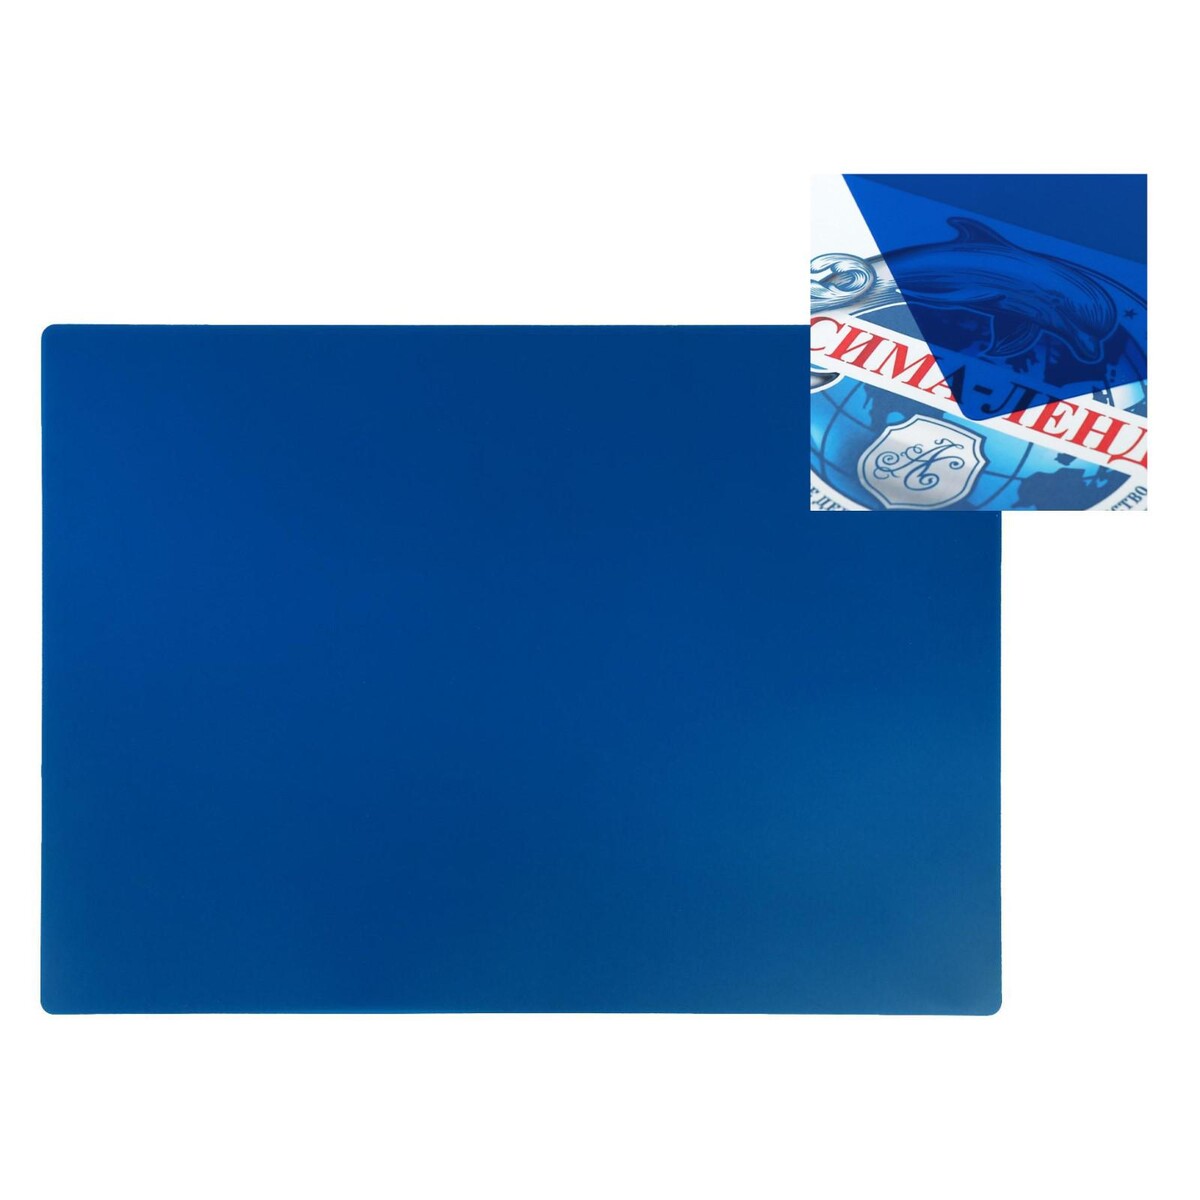 Накладка на стол пластиковая а3, 460 х 330 мм, 500 мкм, прозрачная, цвет темно-синий (подходит для офиса) накладка на стол пластиковая а3 460 х 330 мм calligrata